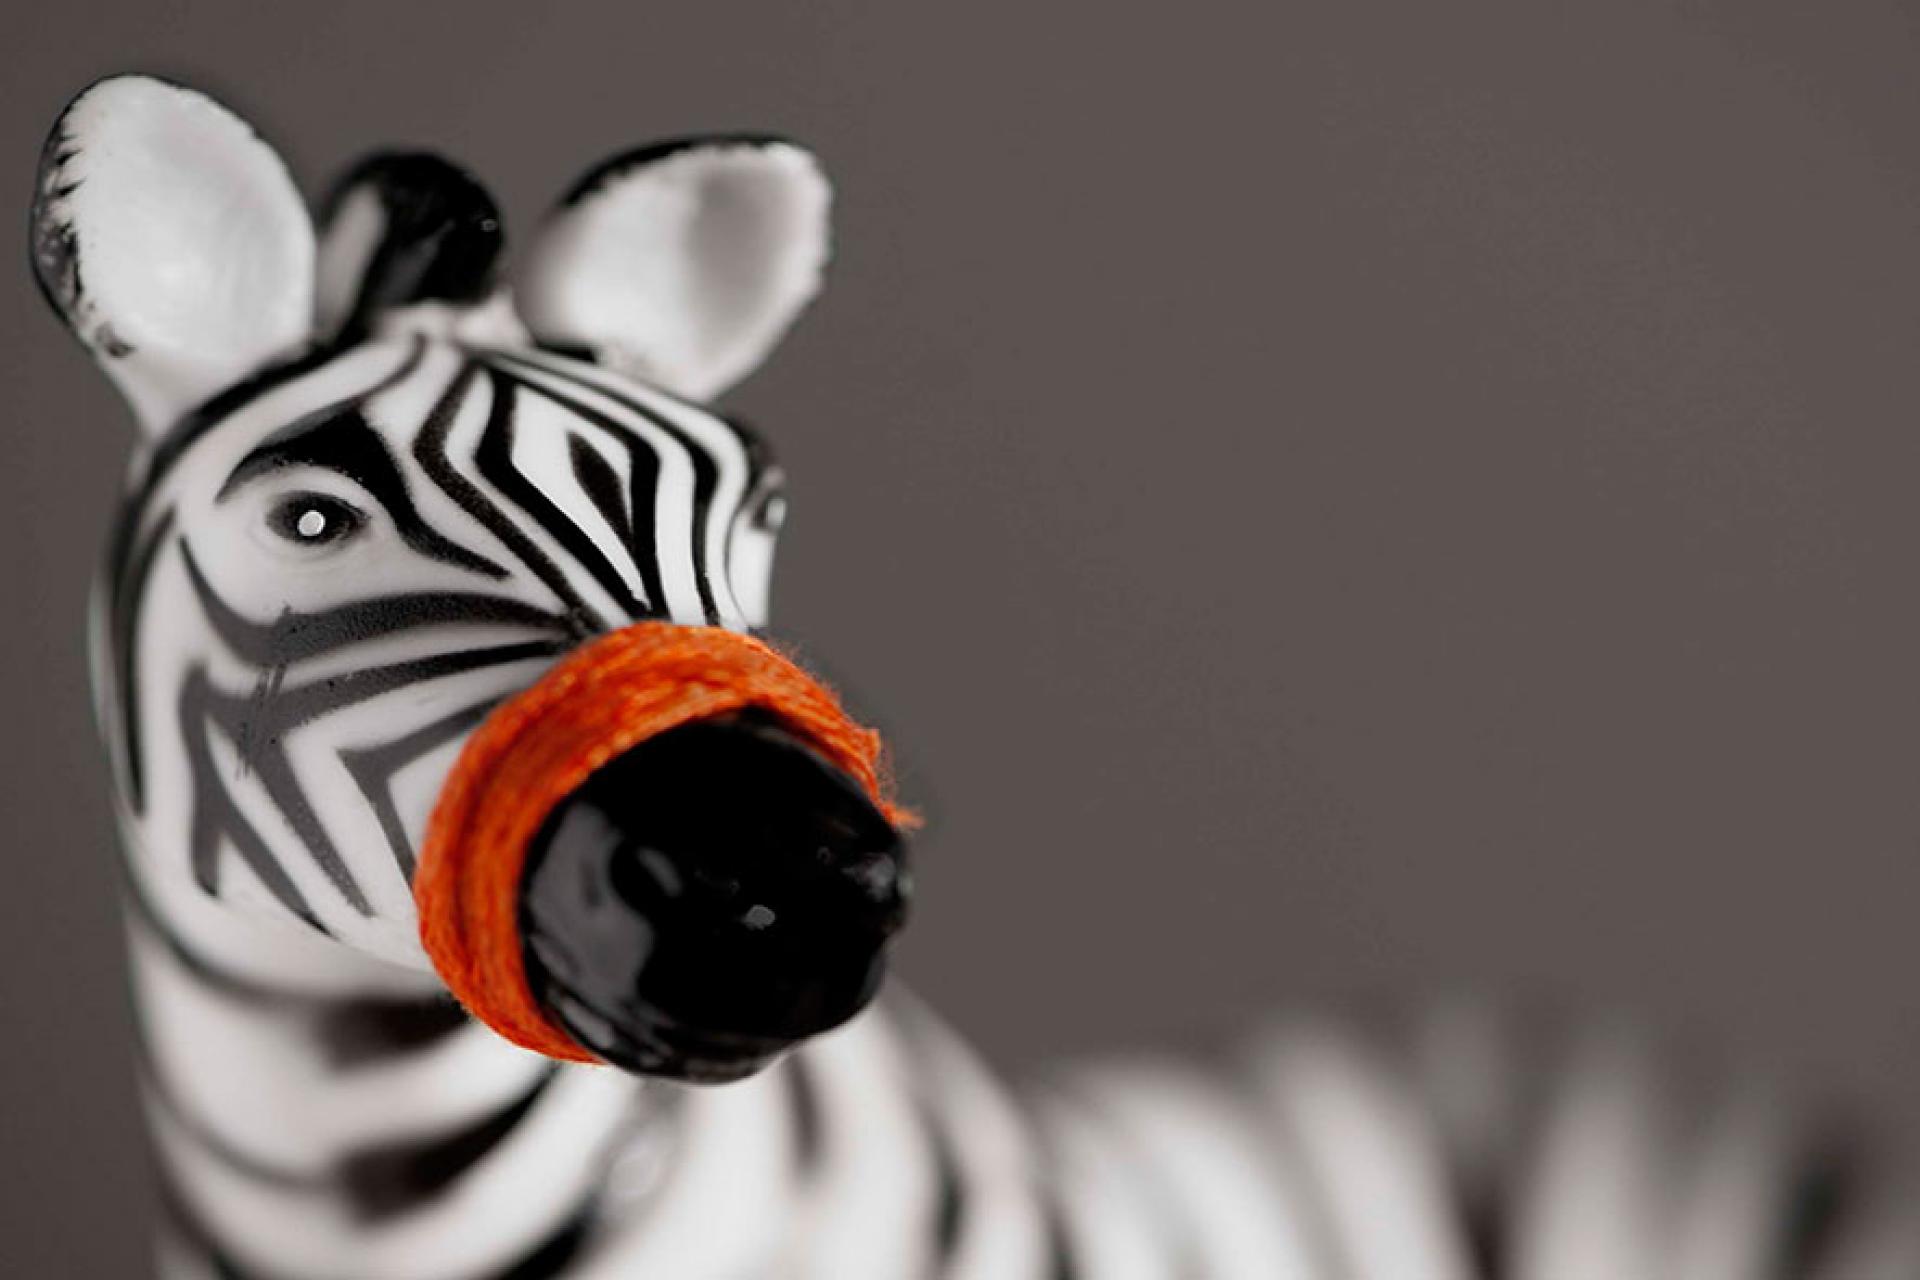 Zebra figurine